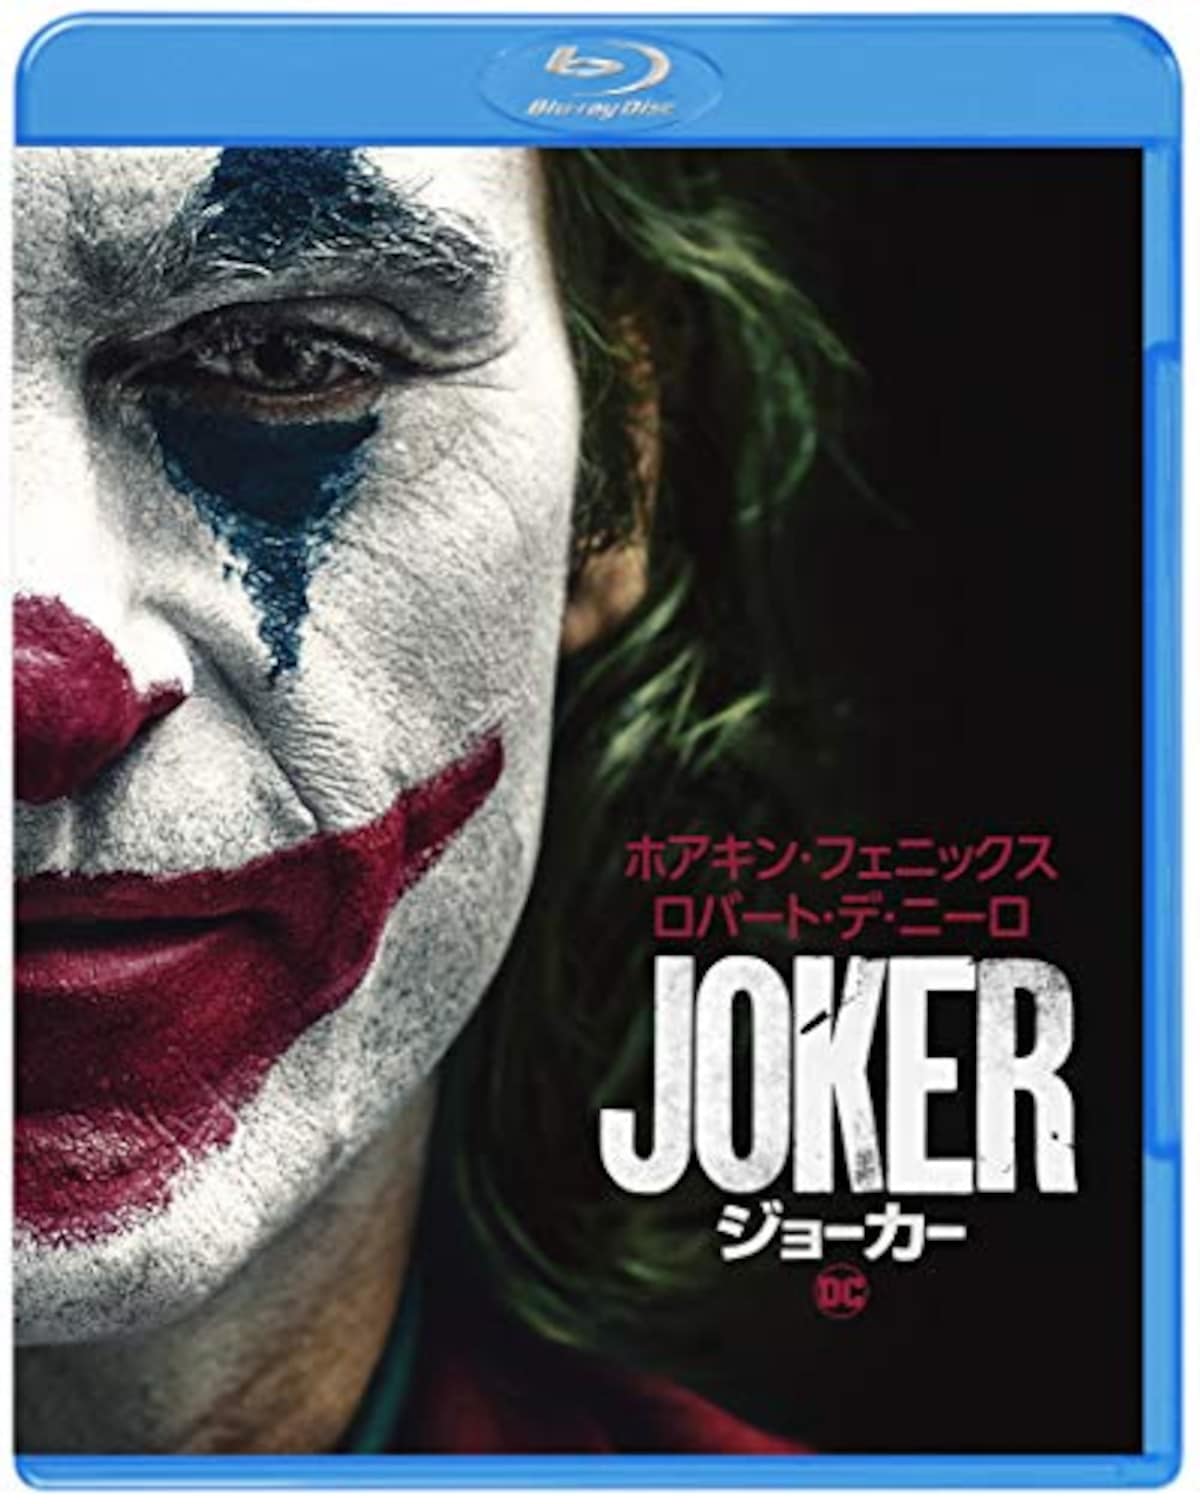 ジョーカー Blu-ray